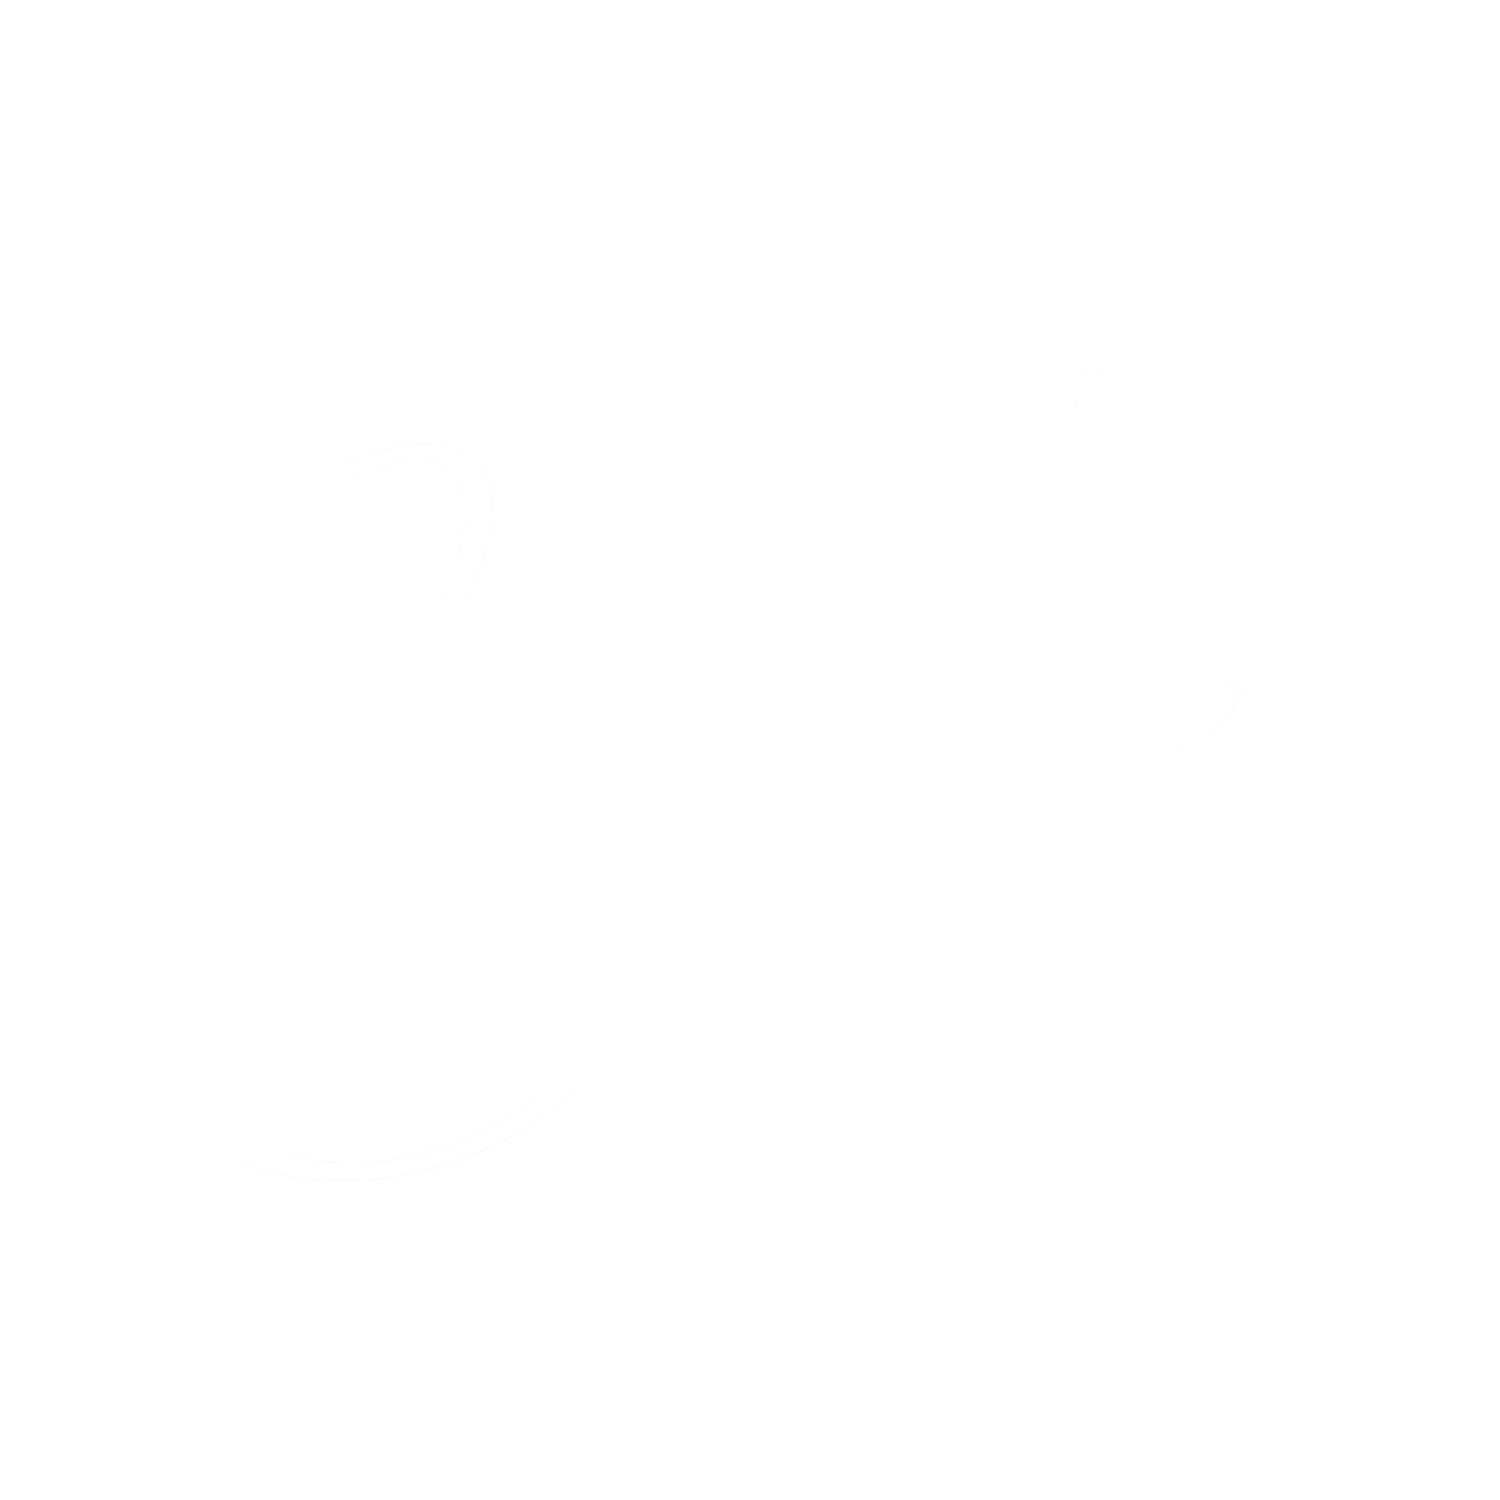 Bind - SEO & Web Development